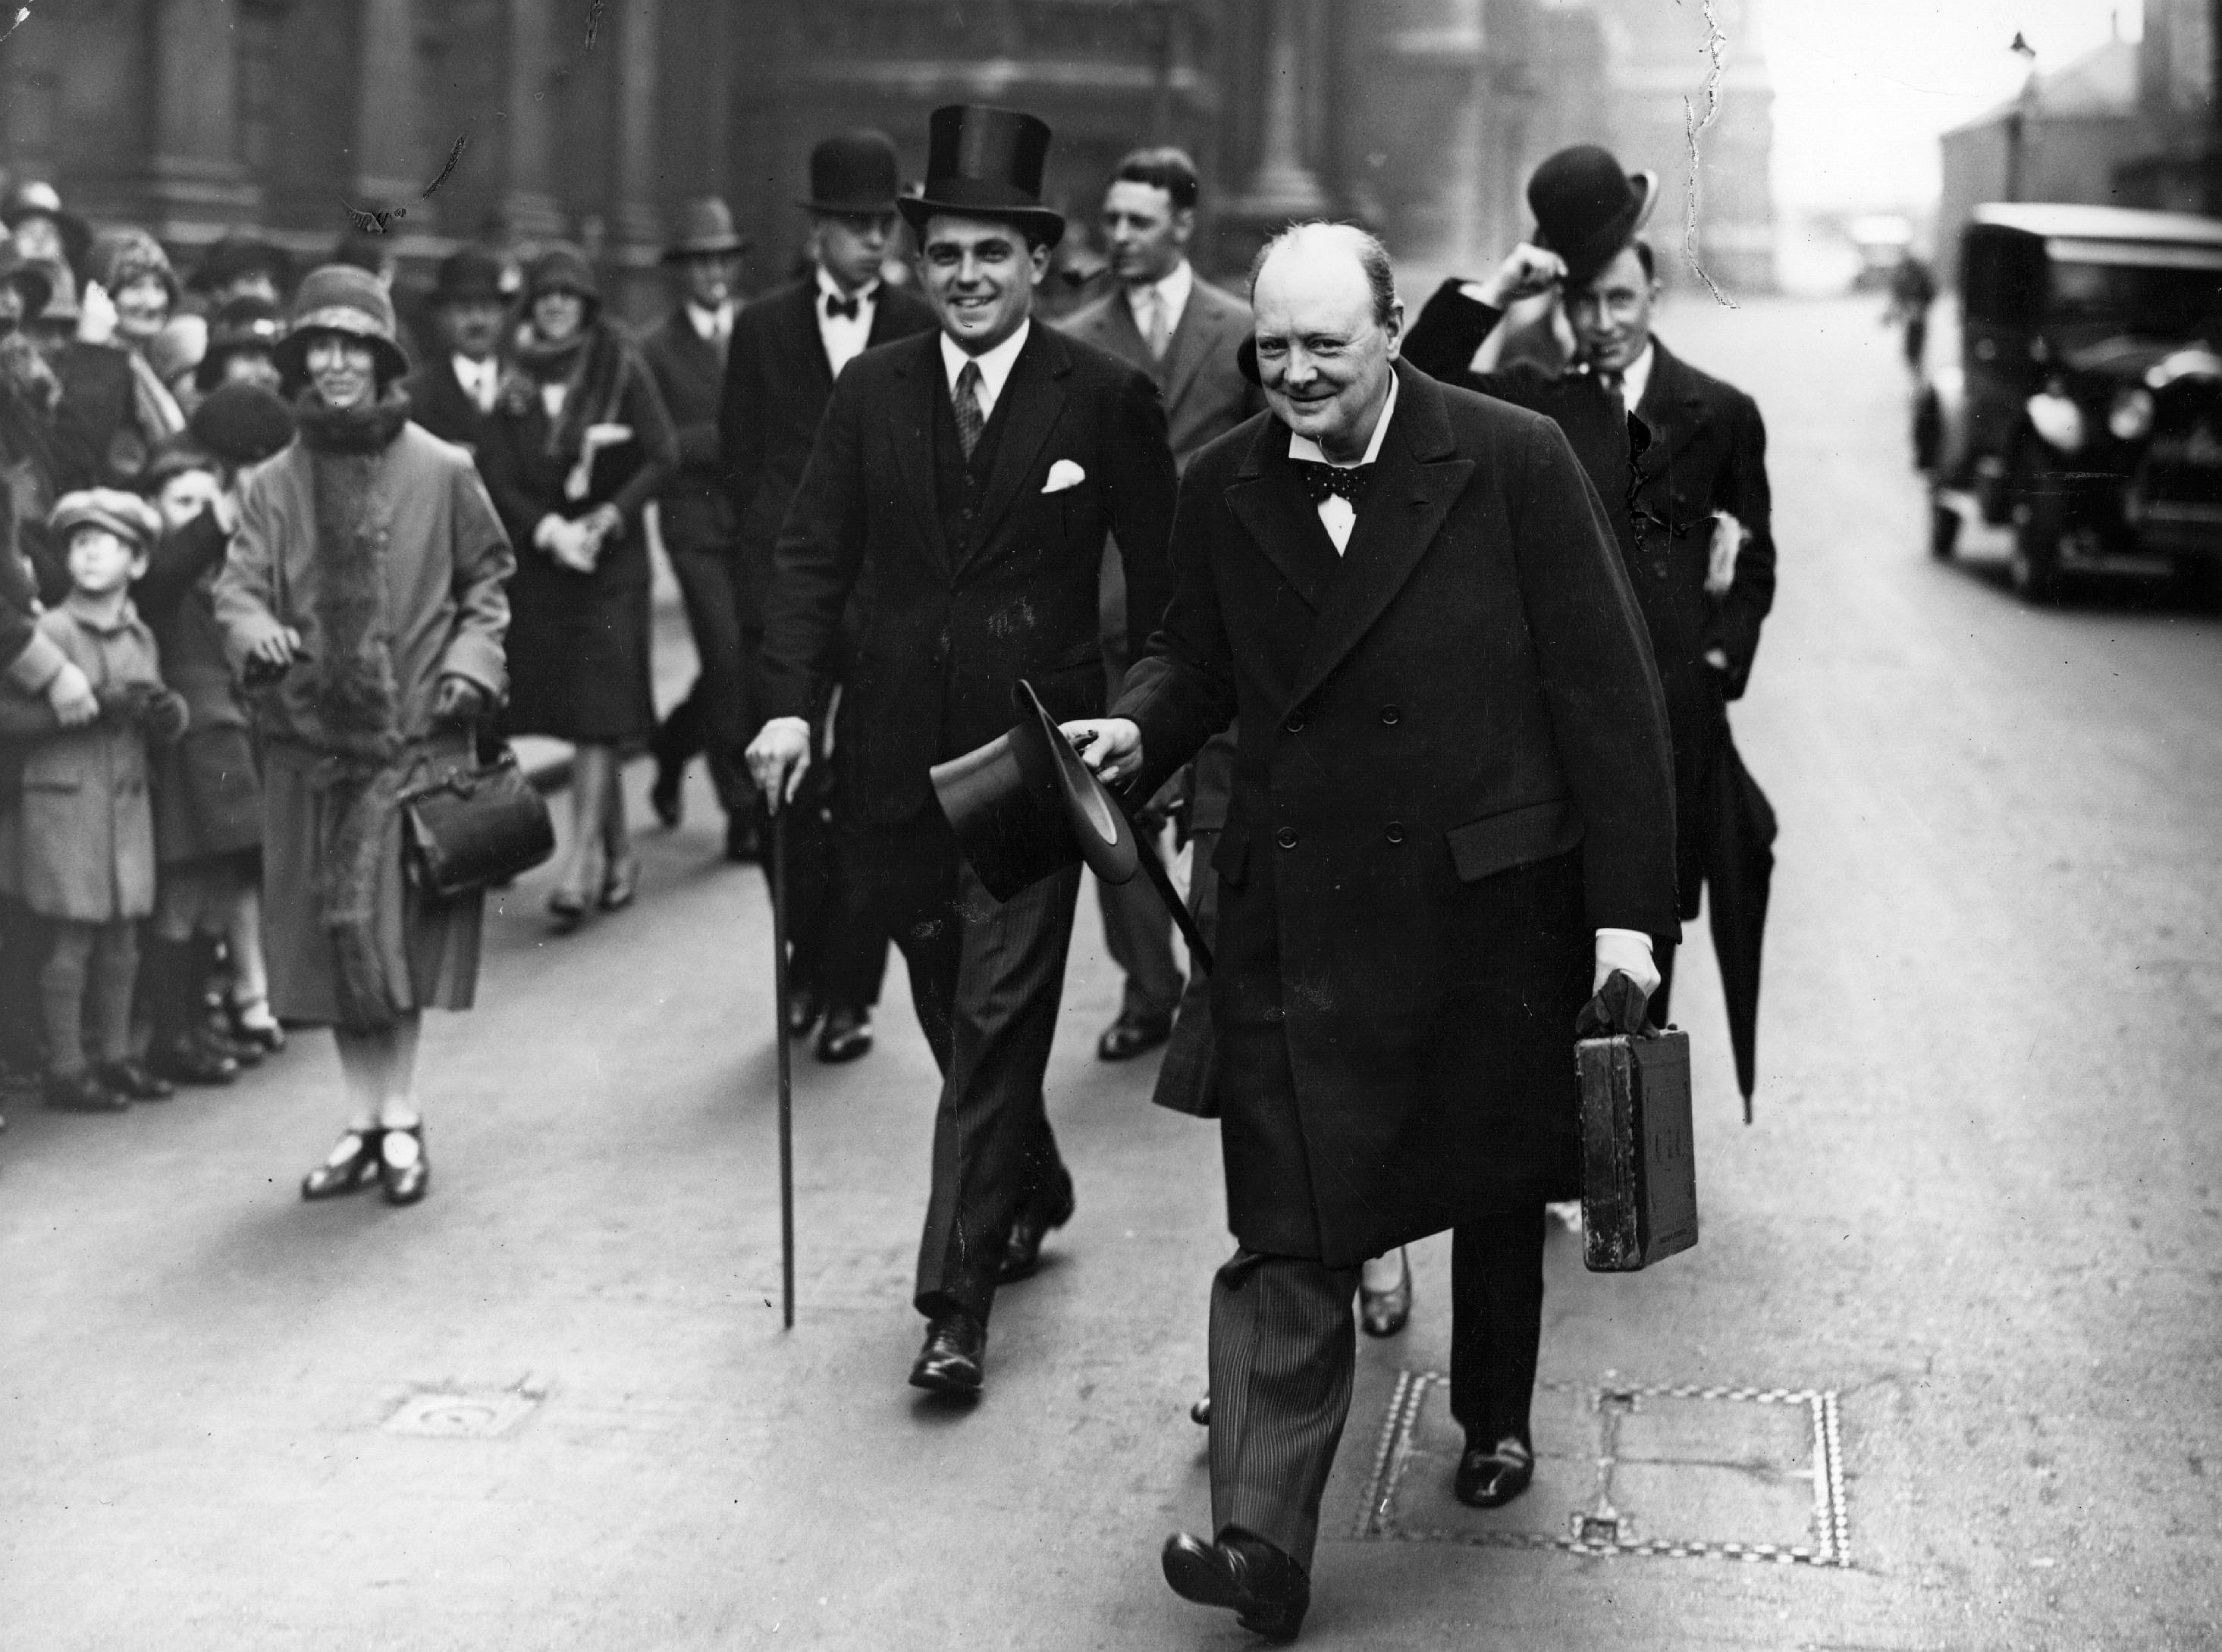 Winston Churchill, un géant dans le siècle